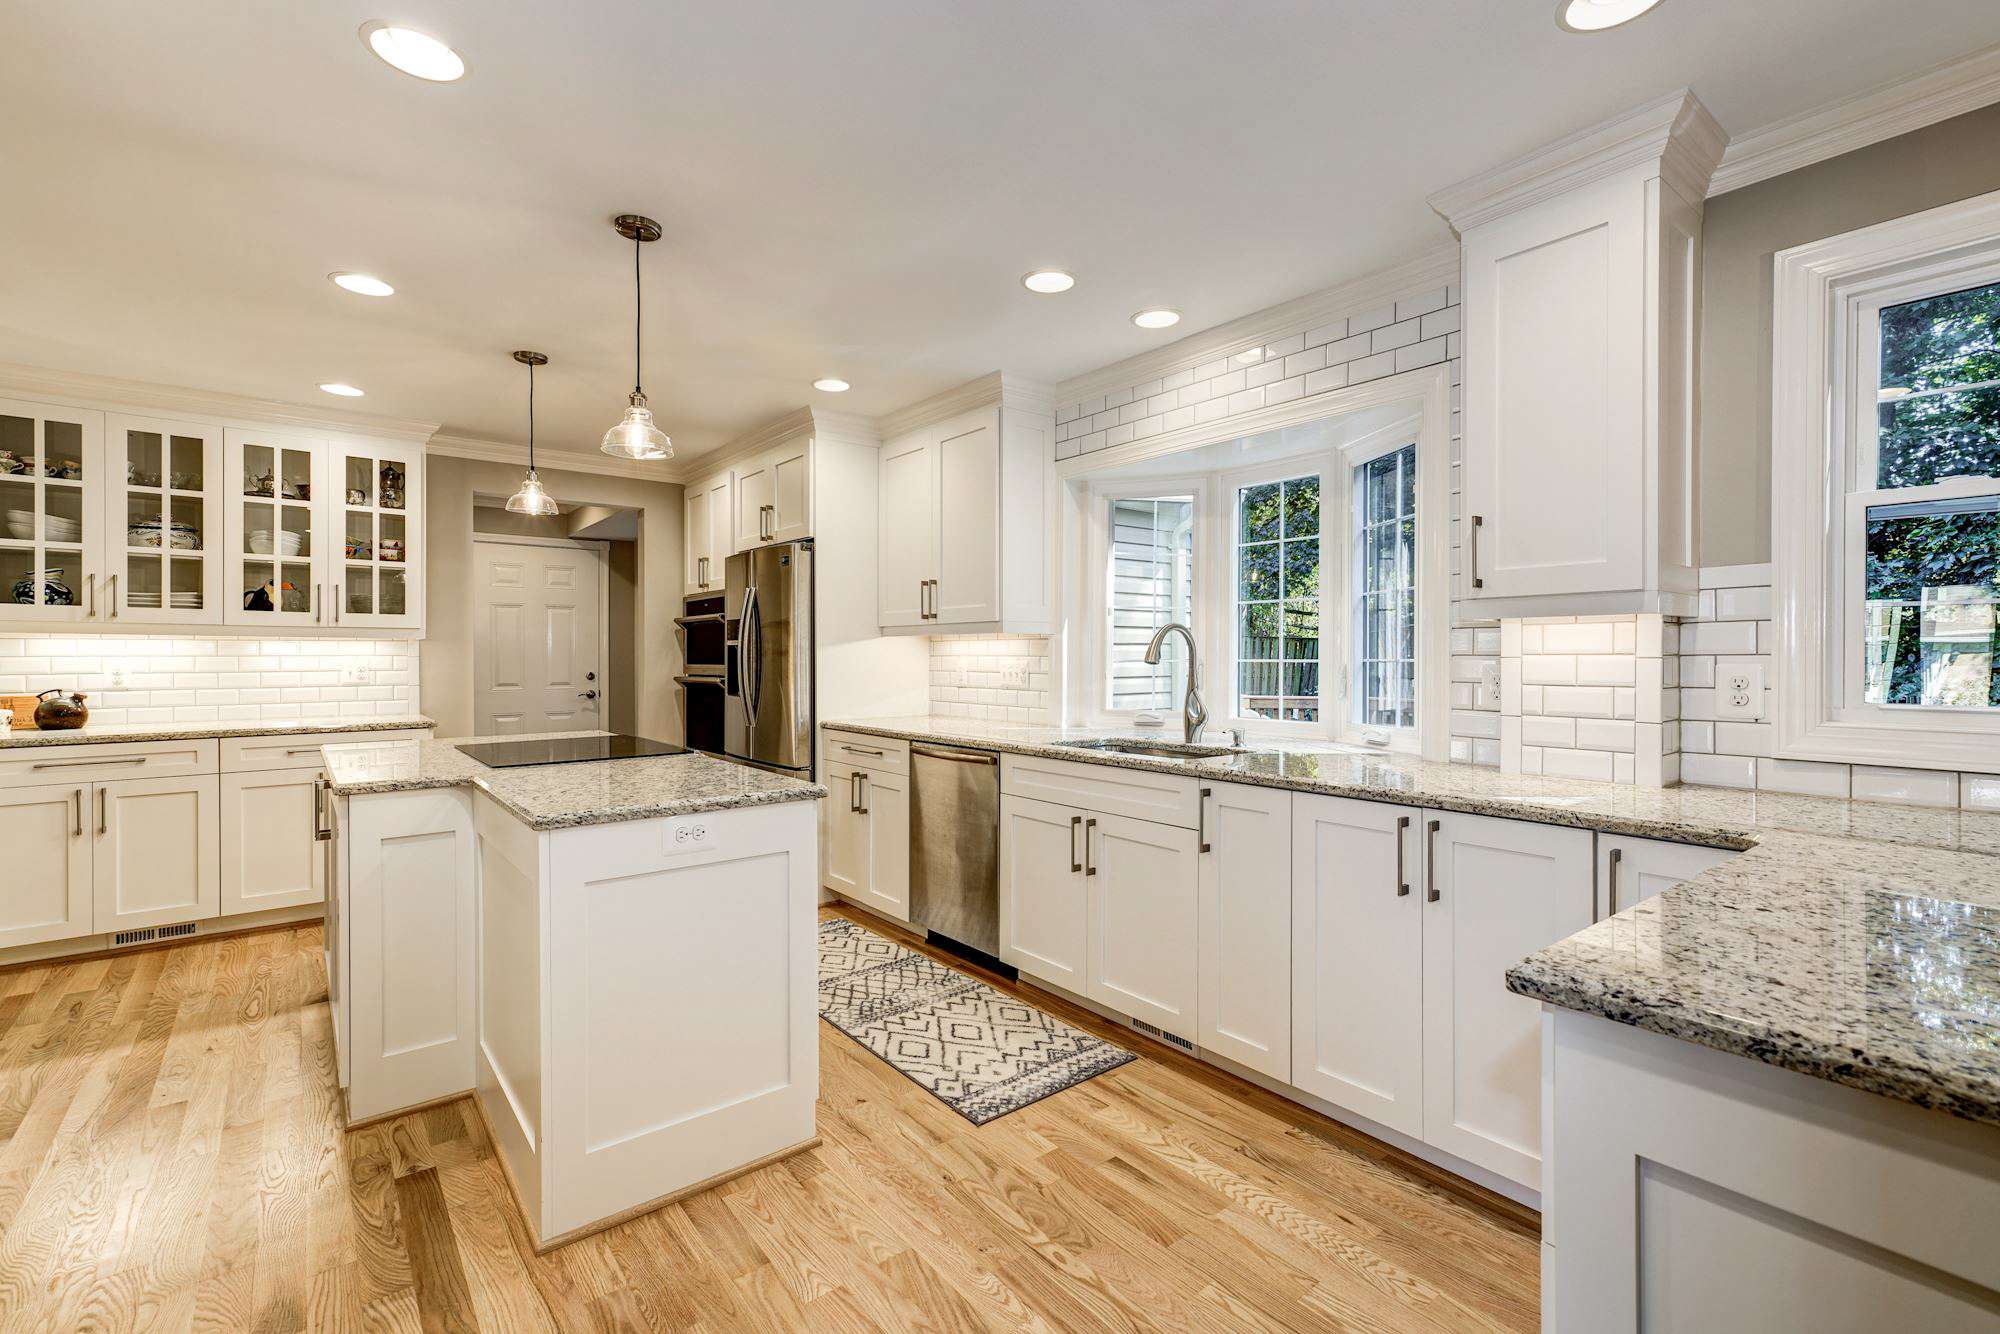 White kitchen cabinets with dark beige granite countertops